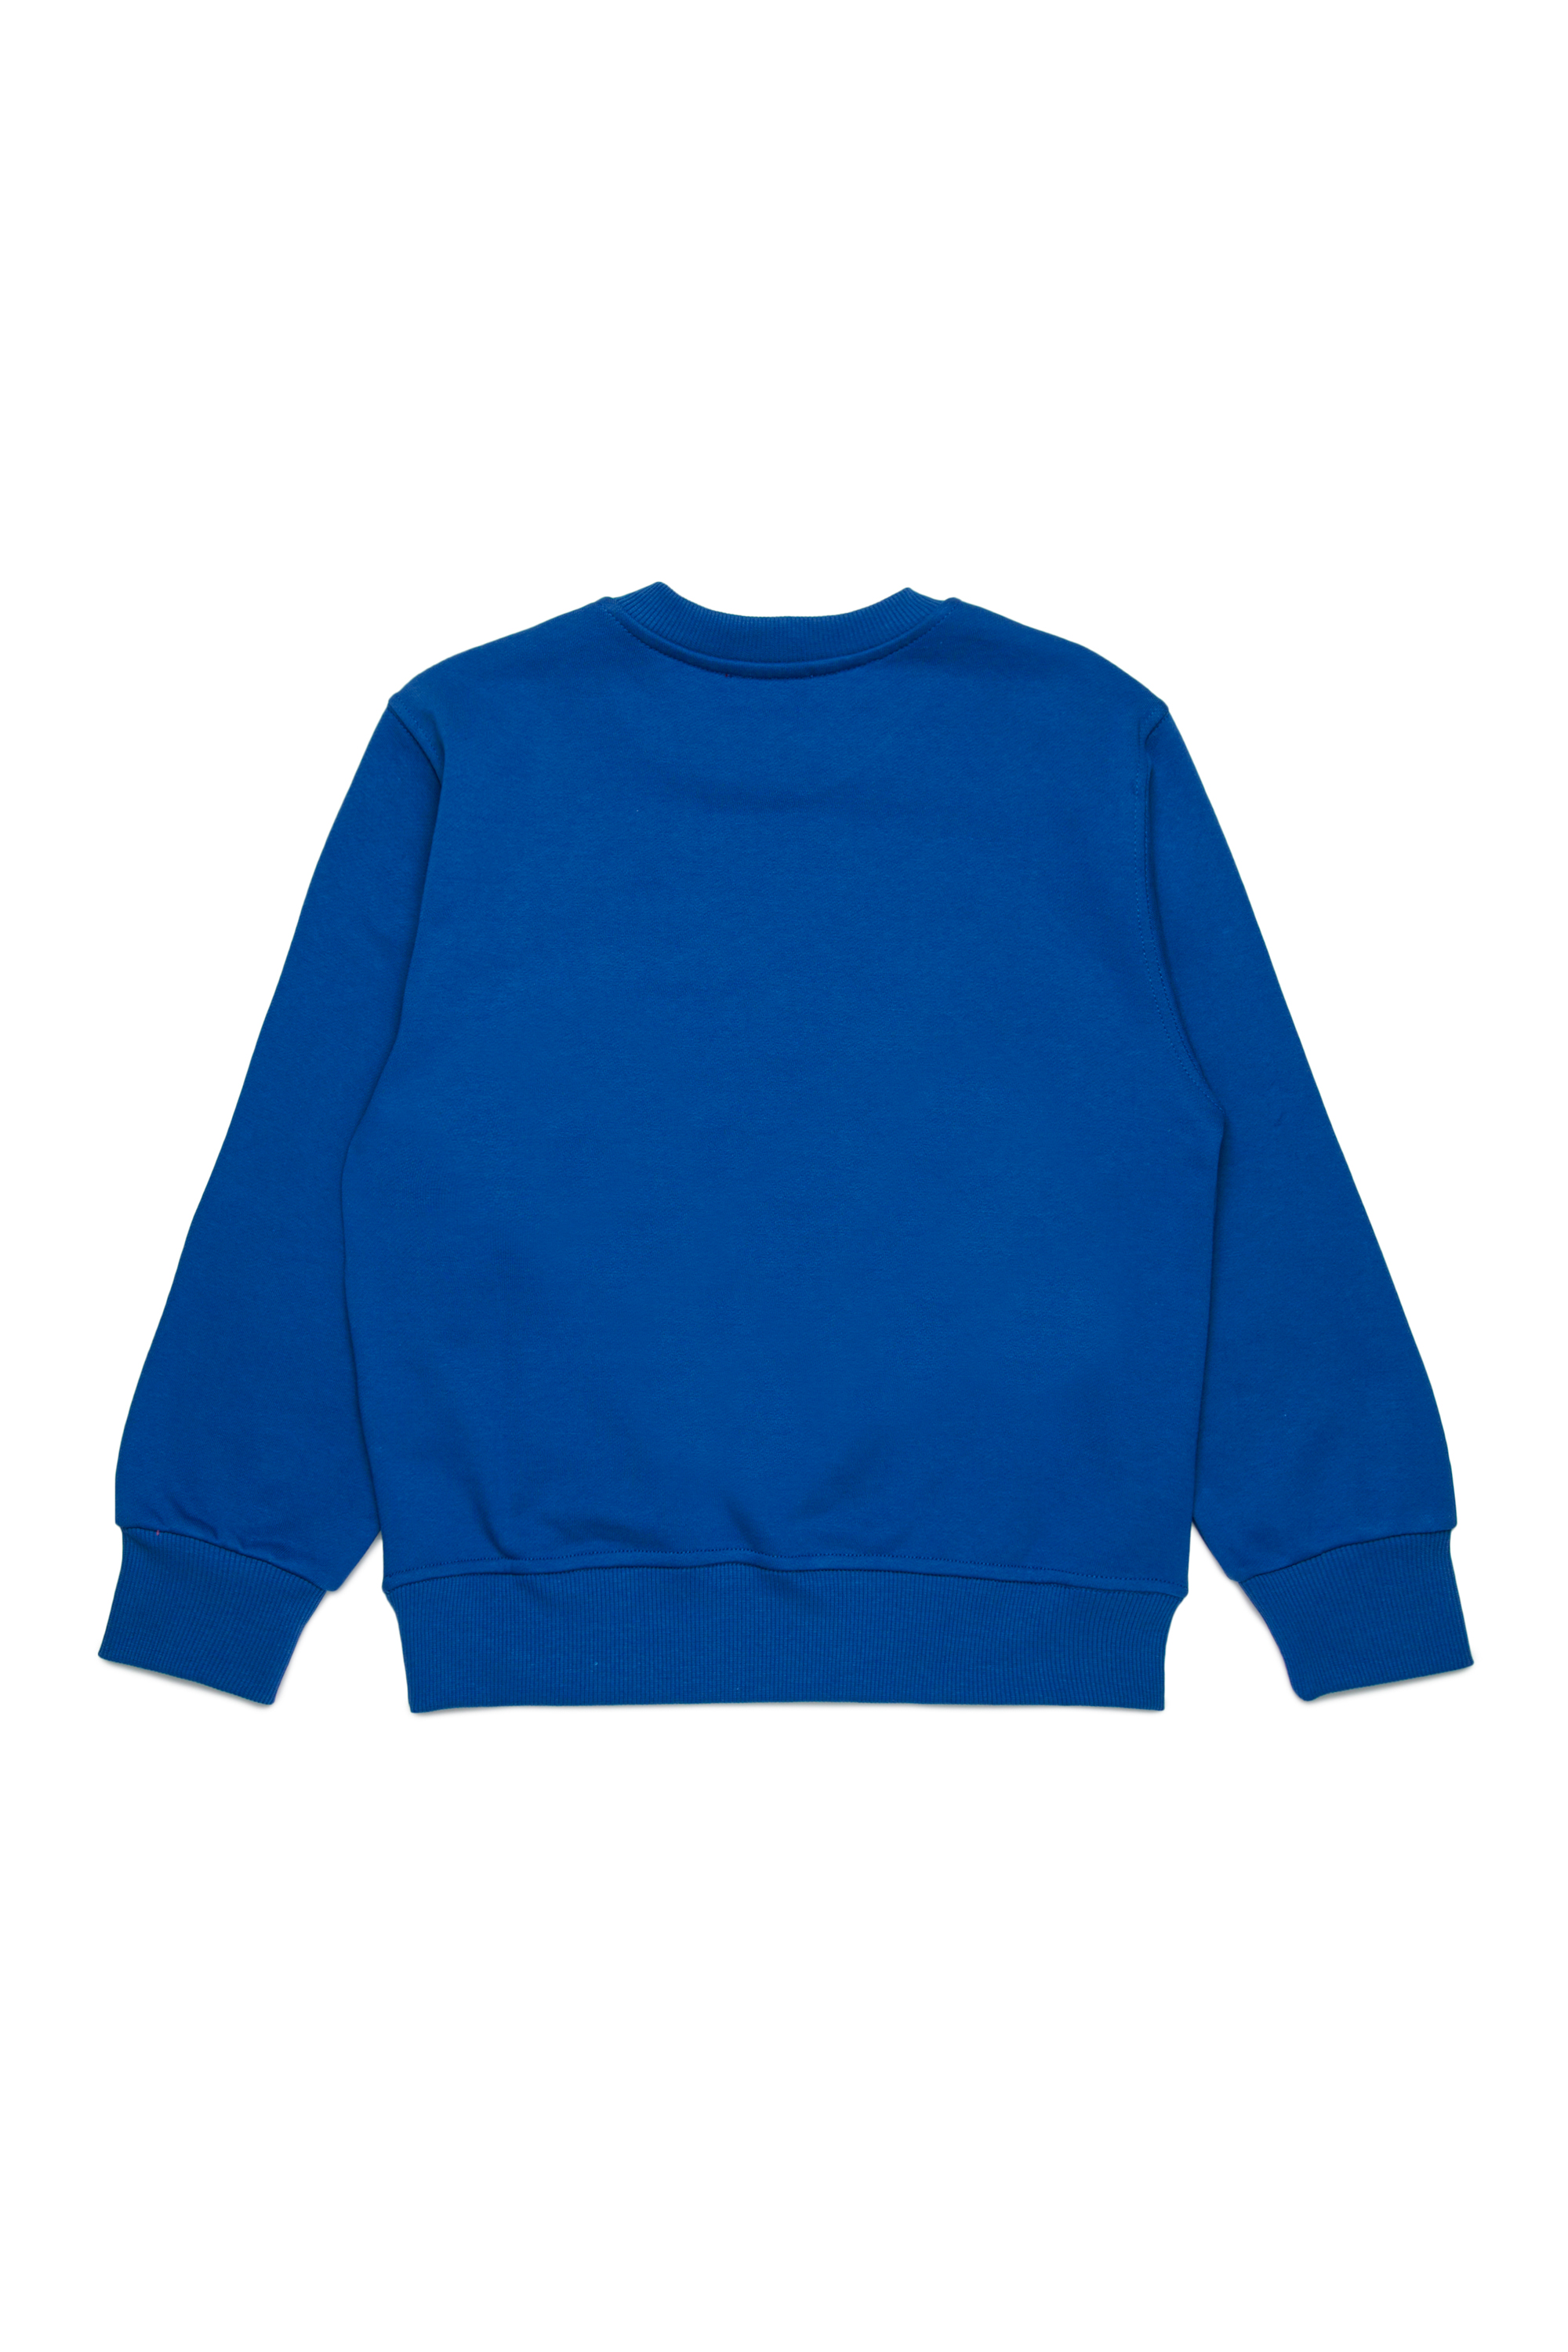 Diesel - SGINNL8 OVER, Man Sweatshirt with smudged logo in Blue - Image 2